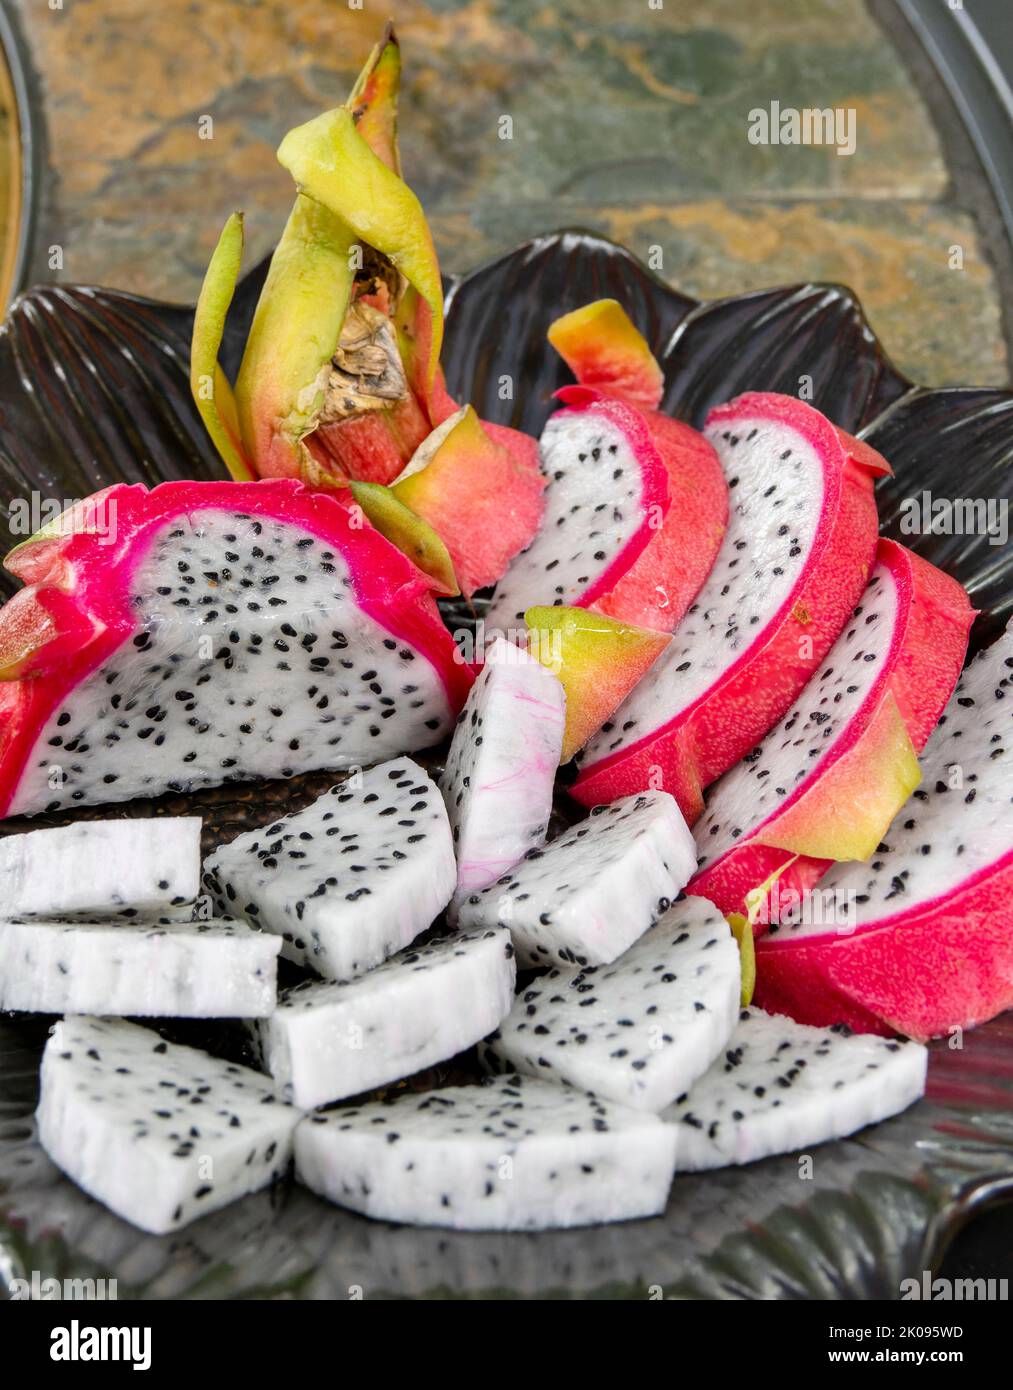 Platte aus geschnittener Drachenfrucht, Pitahaya oder Pitaya, aus der Familie Cactaceae, die Frucht mehrerer verschiedener Kaktusarten. Stockfoto